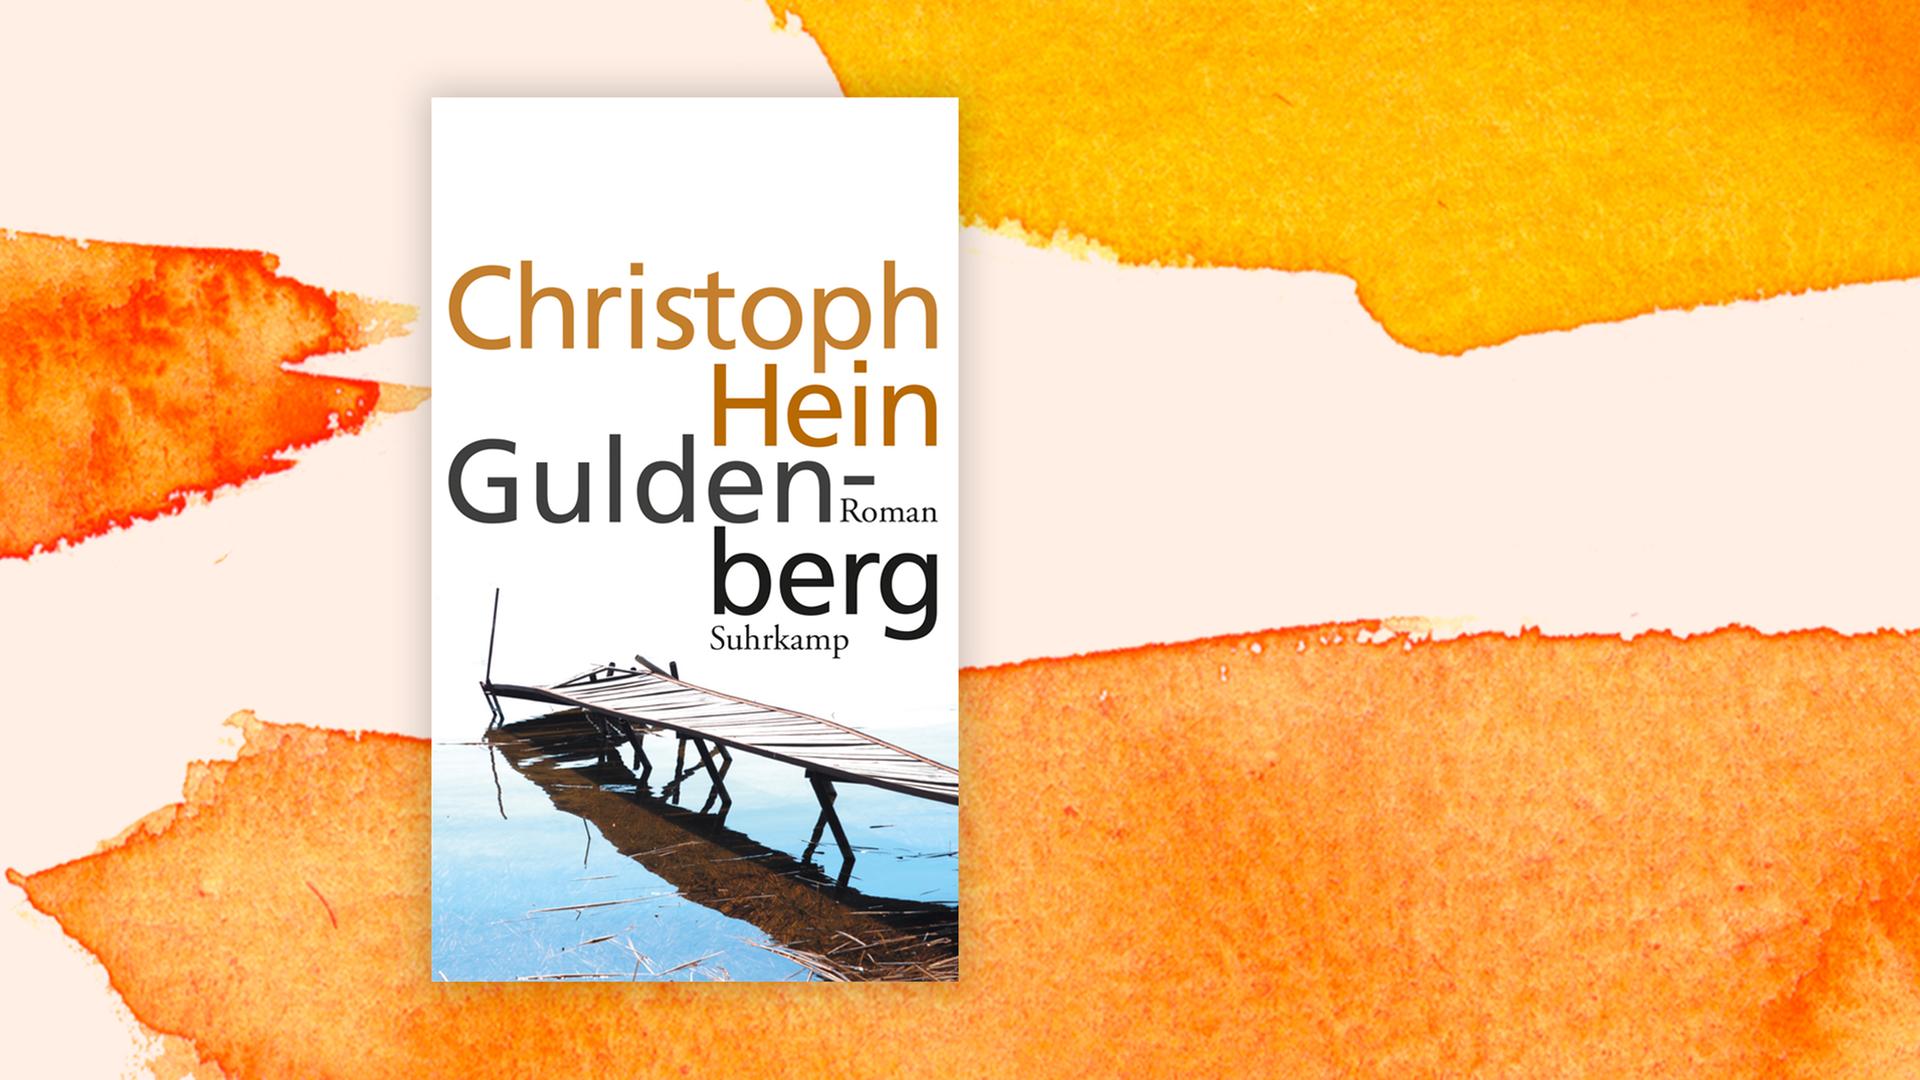 Das Buchcover "Guldenberg" von Christoph Hein, mit der Illustration eines maroden Holzstegs, vor einem grafischen Hintergrund.